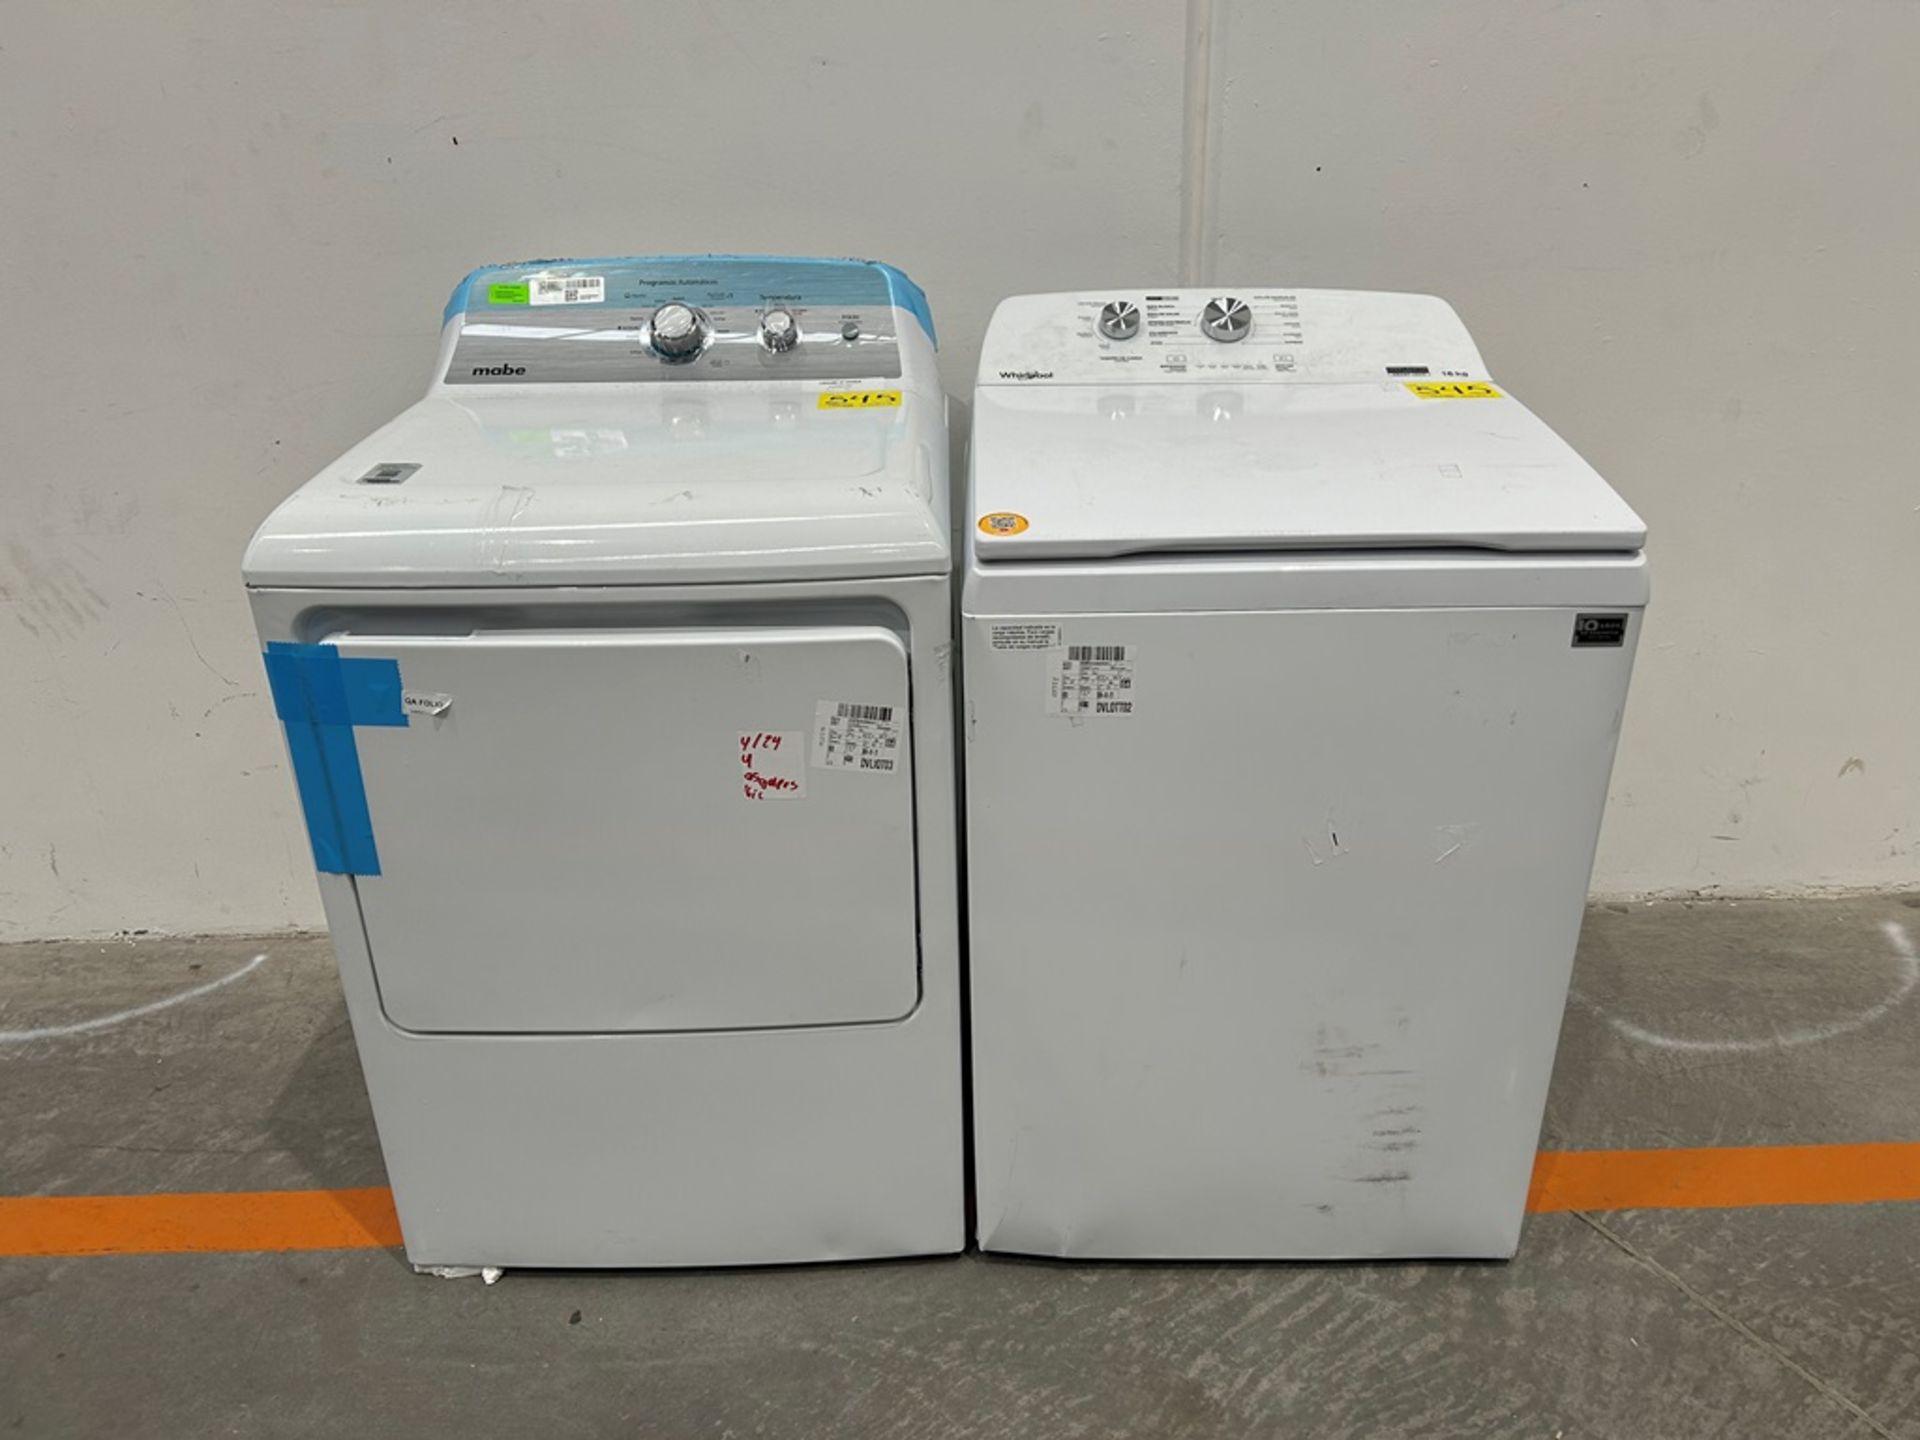 Lote de 1 lavadora y una Secadora contiene: 1 Lavadora de 16kg Marca WHIRLPOOL, Modelo 8MWTW1612MJQ1